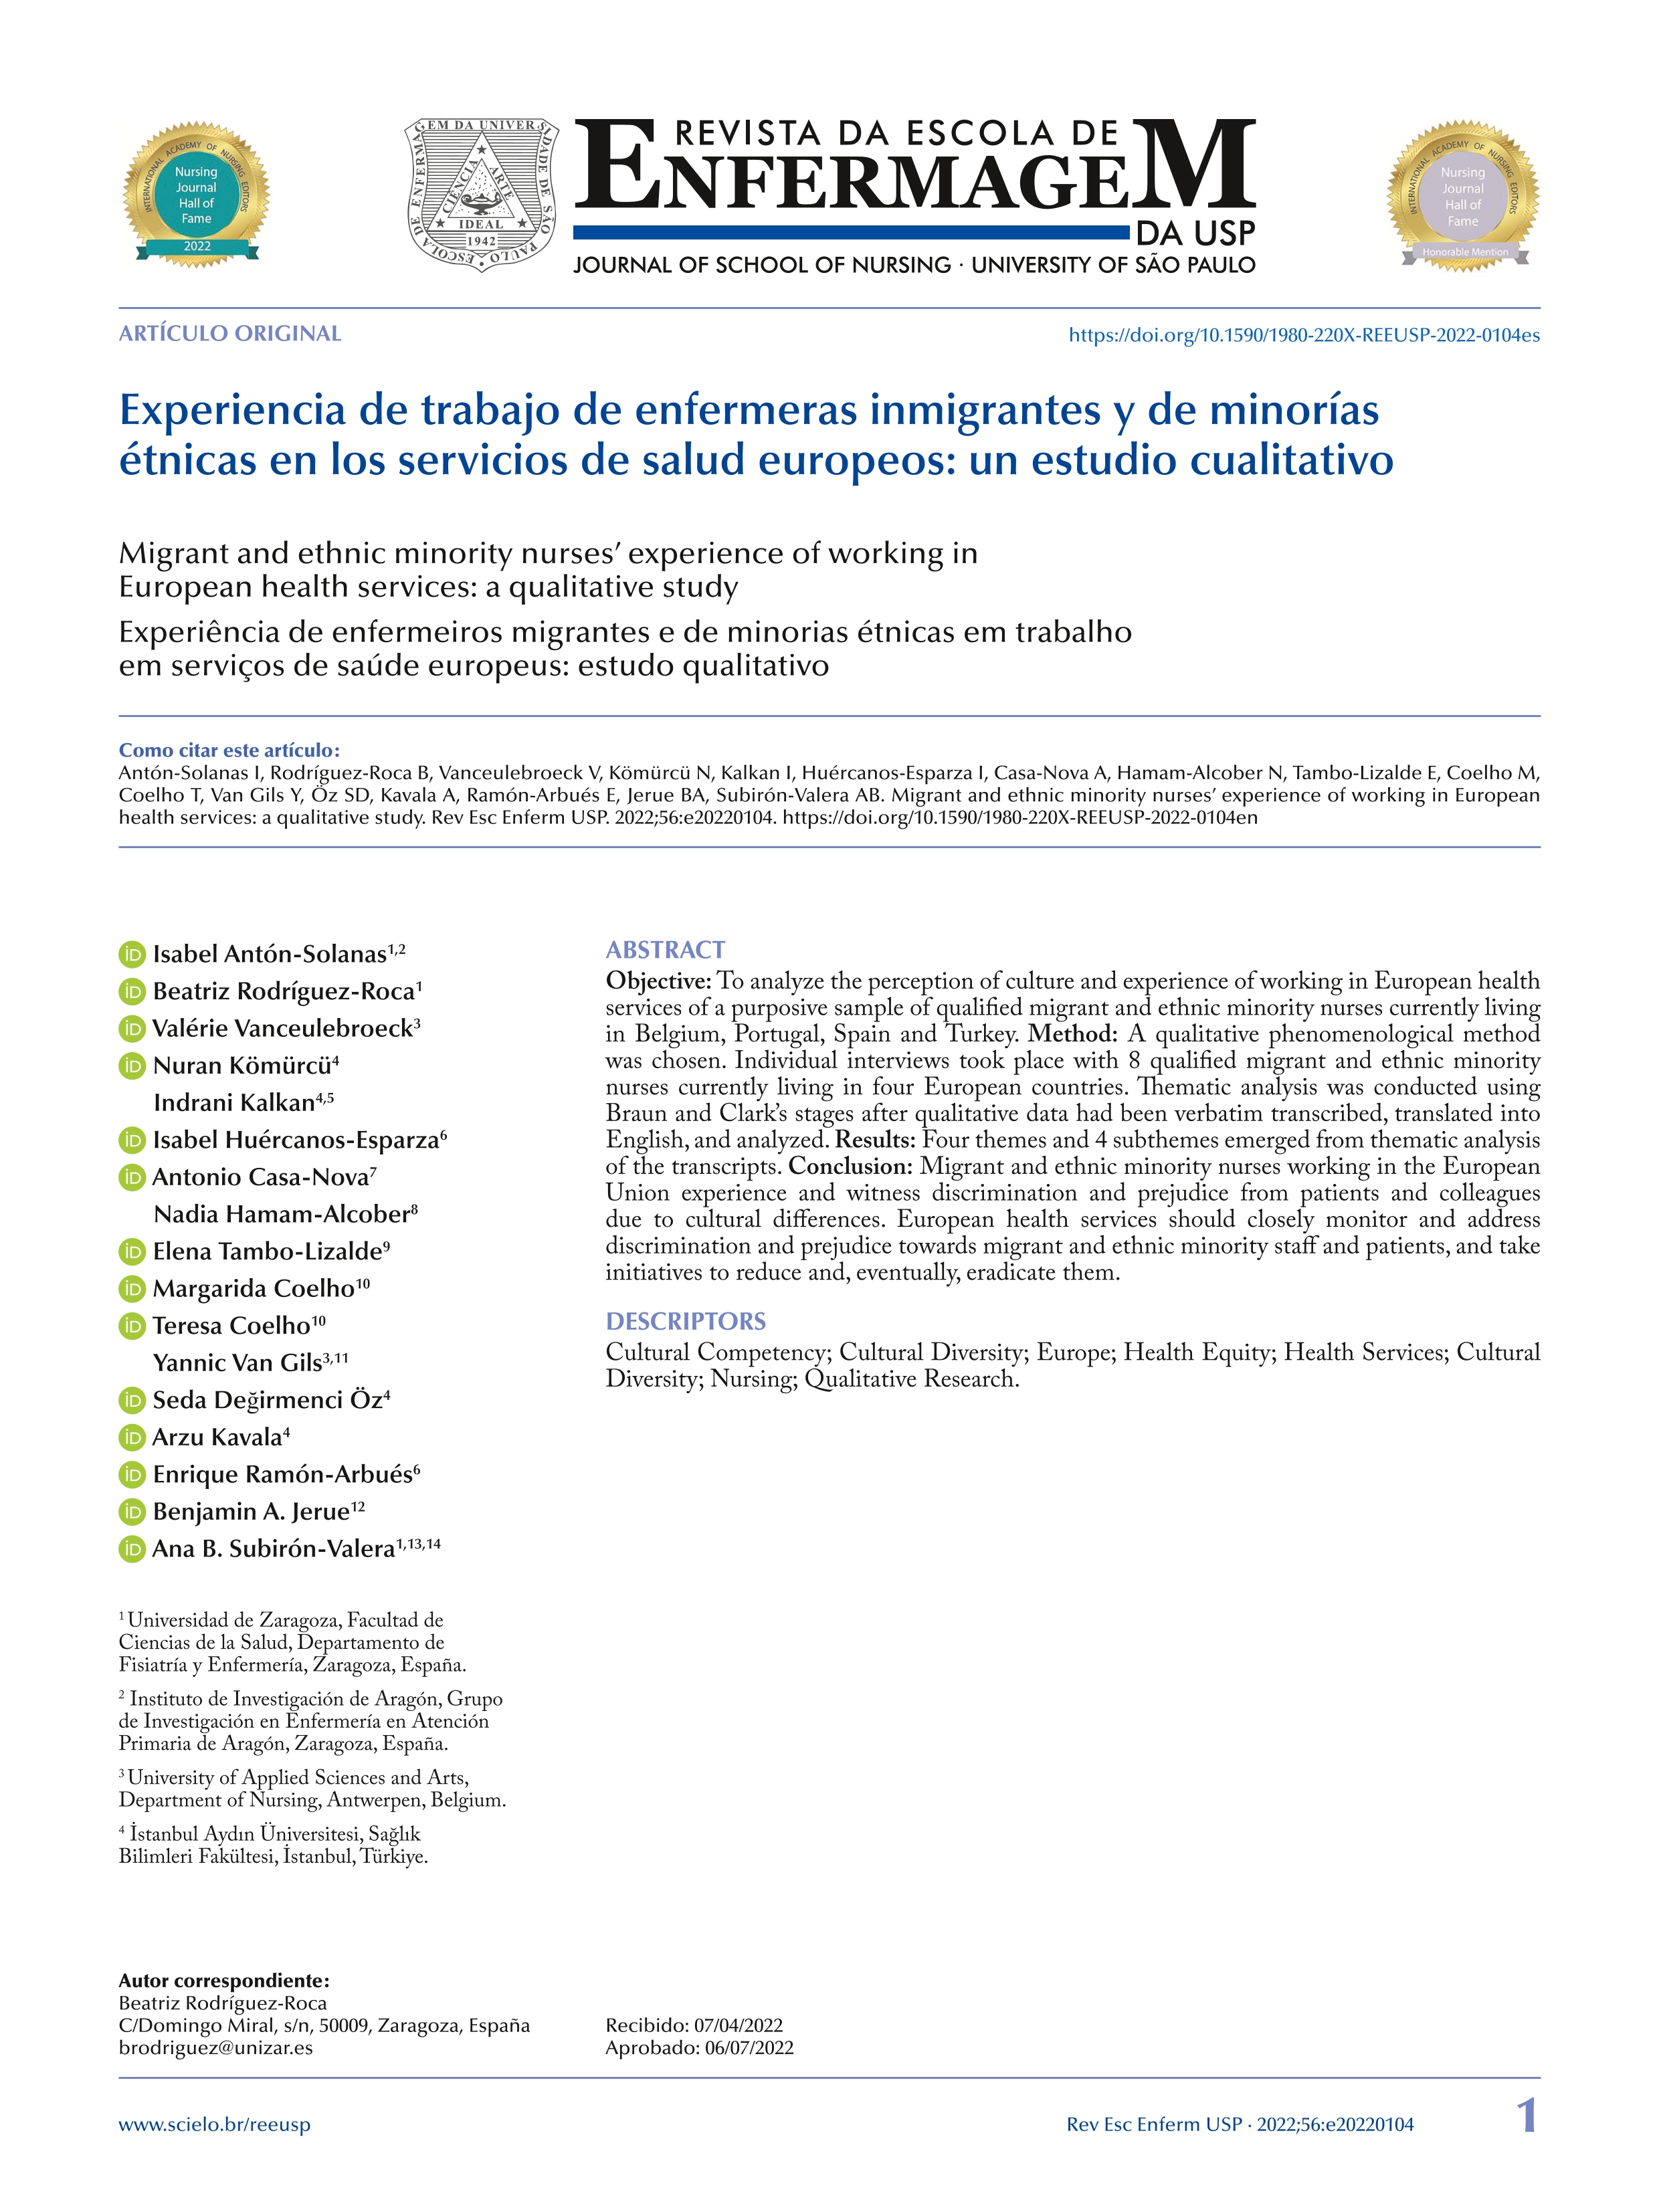 Experiencia de trabajo de enfermeras inmigrantes y de minorías étnicas en los servicios de salud europeos: un estudio cualitativo